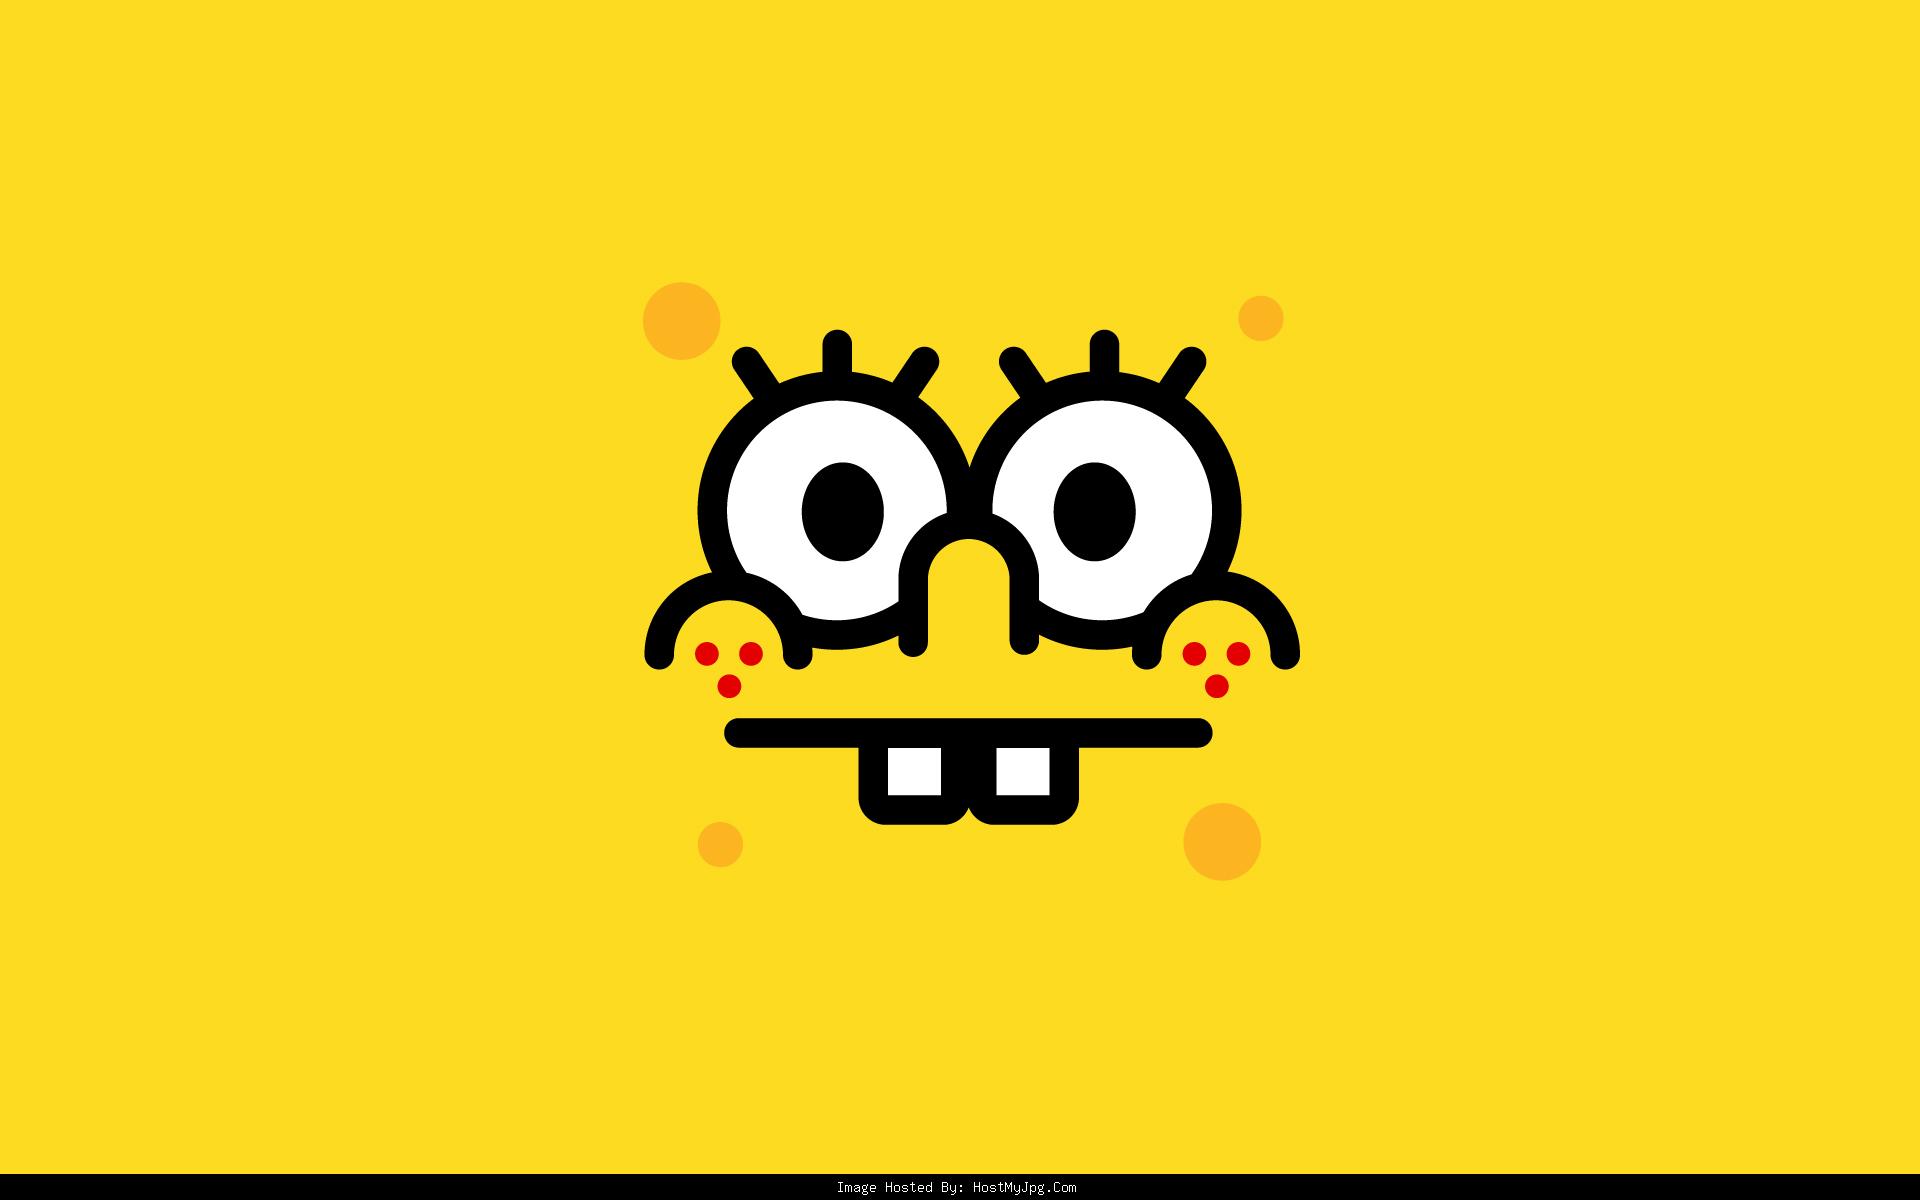 SpongeBob SquarePants The Cosmic Shake Characters 4K Phone iPhone Wallpaper  3660c